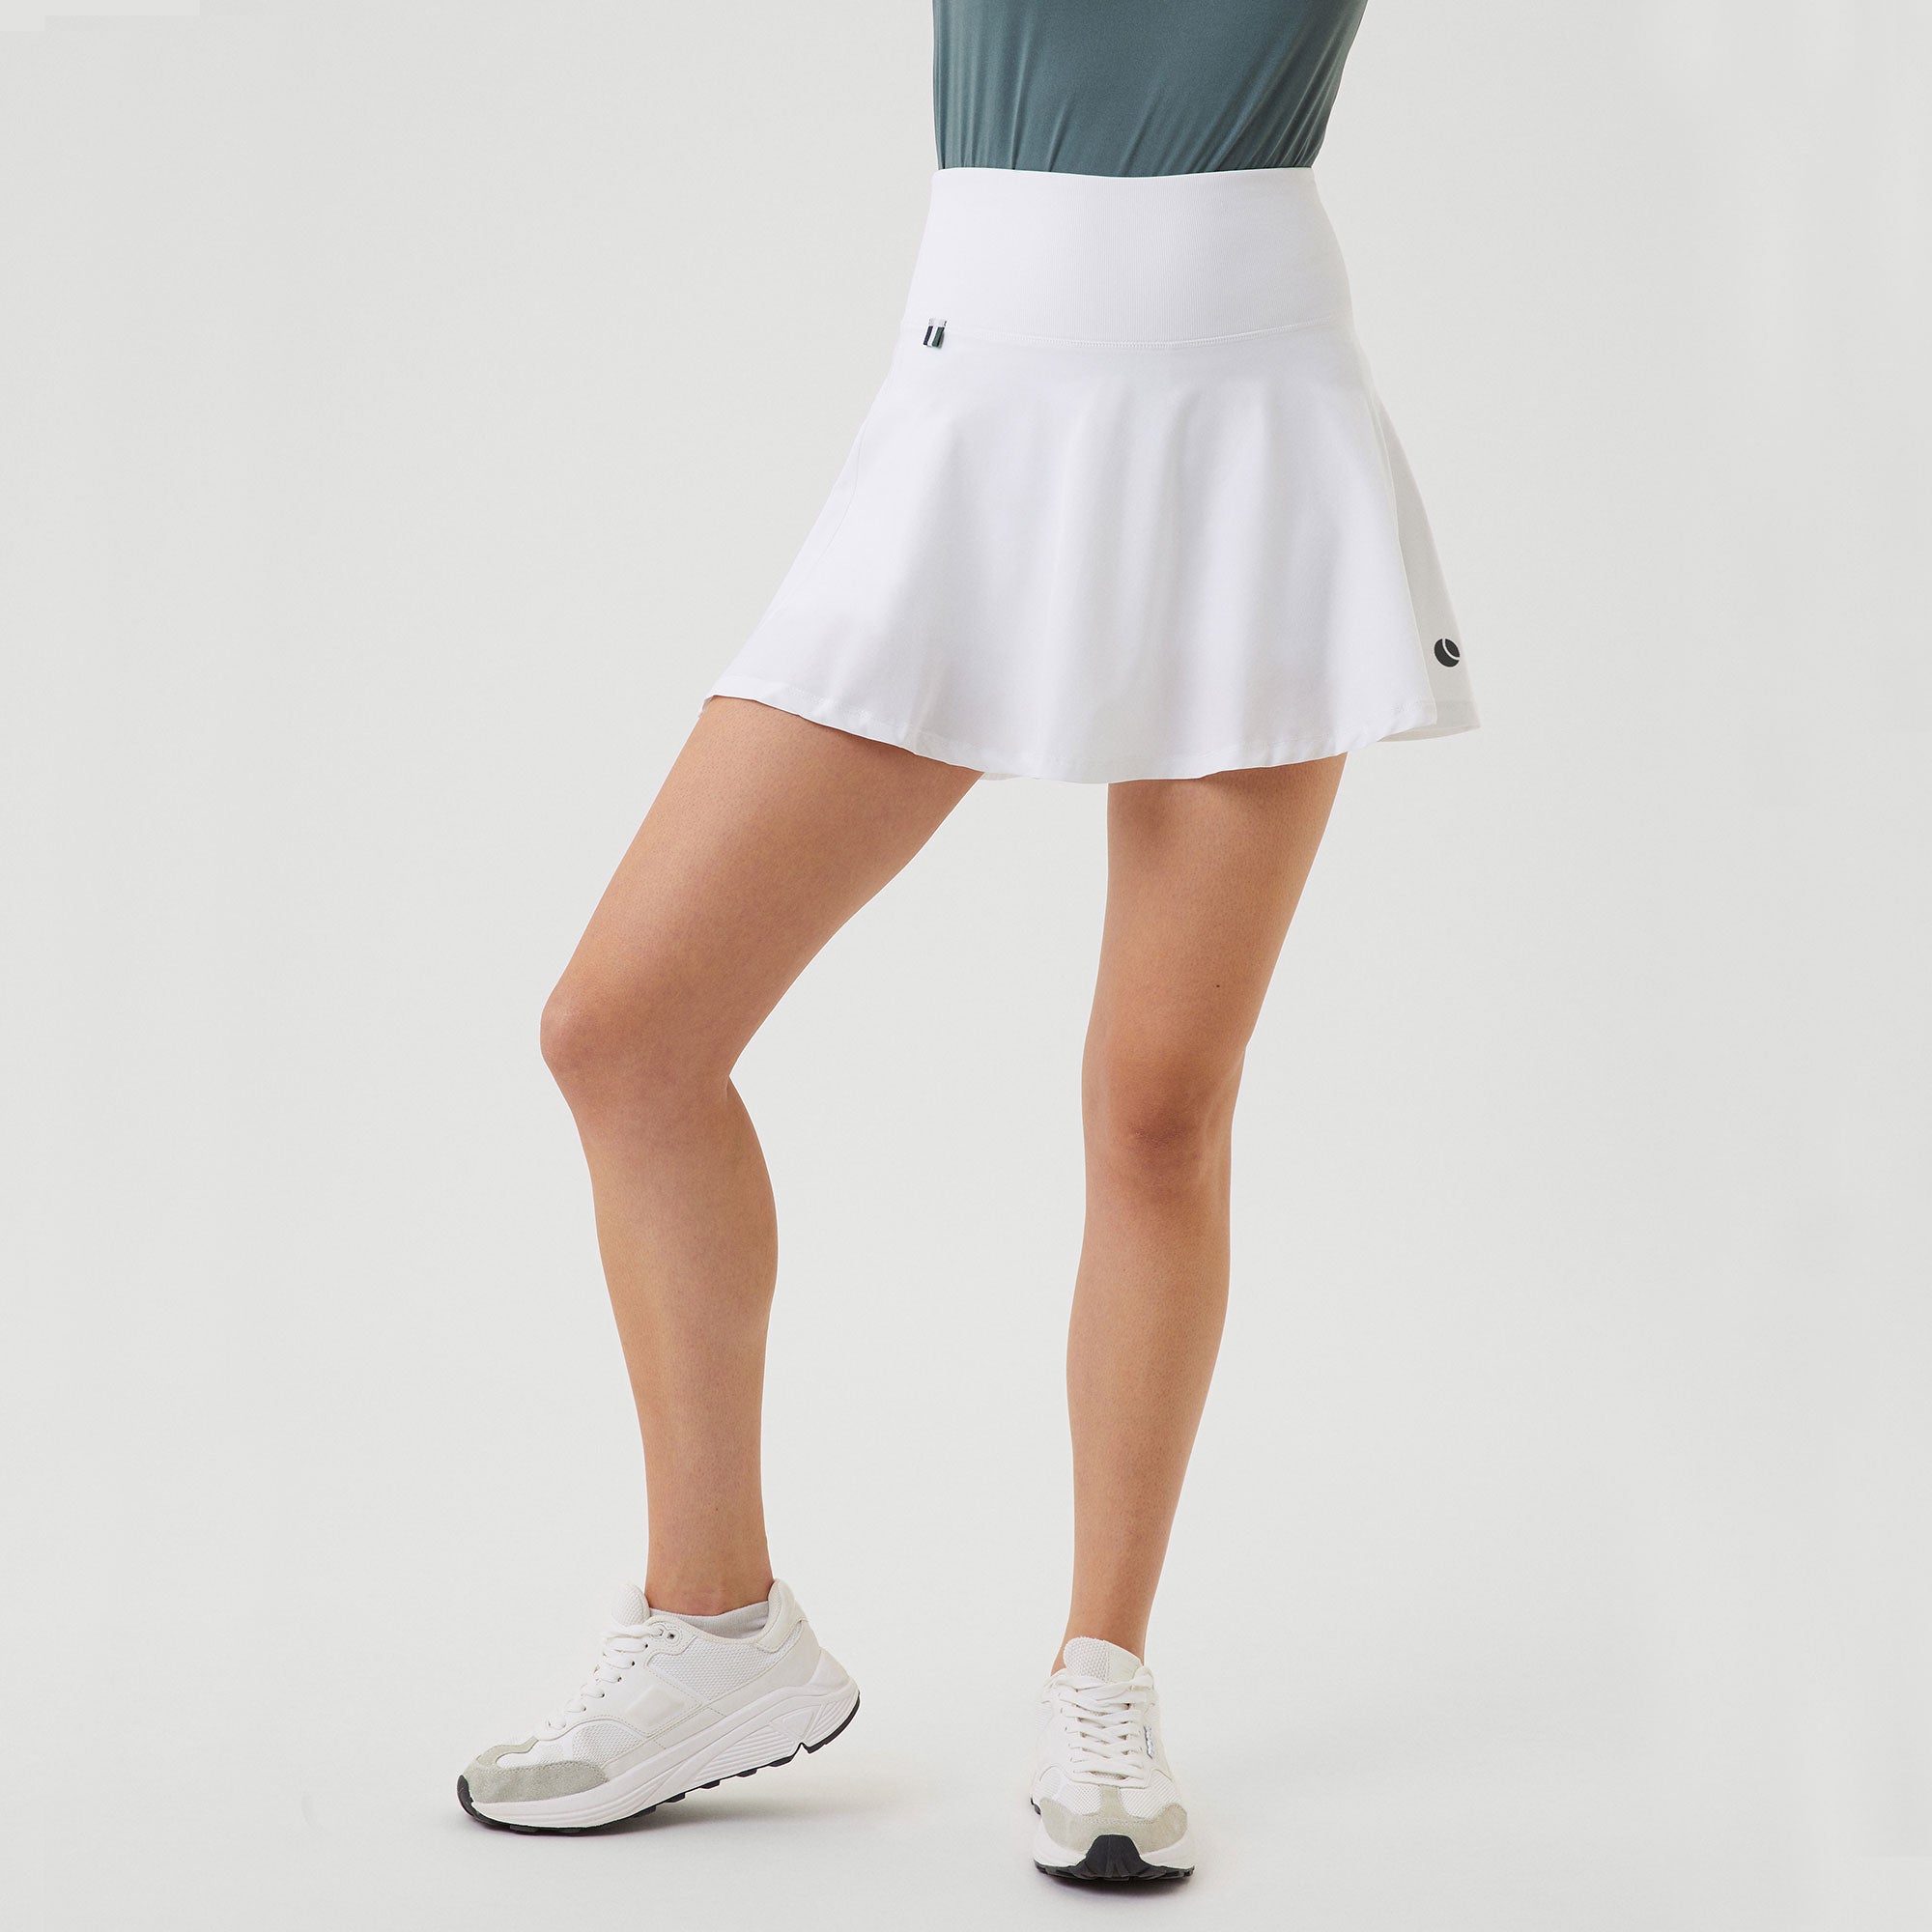 Björn Borg Ace Women's Pocket Tennis Skirt - White (1)